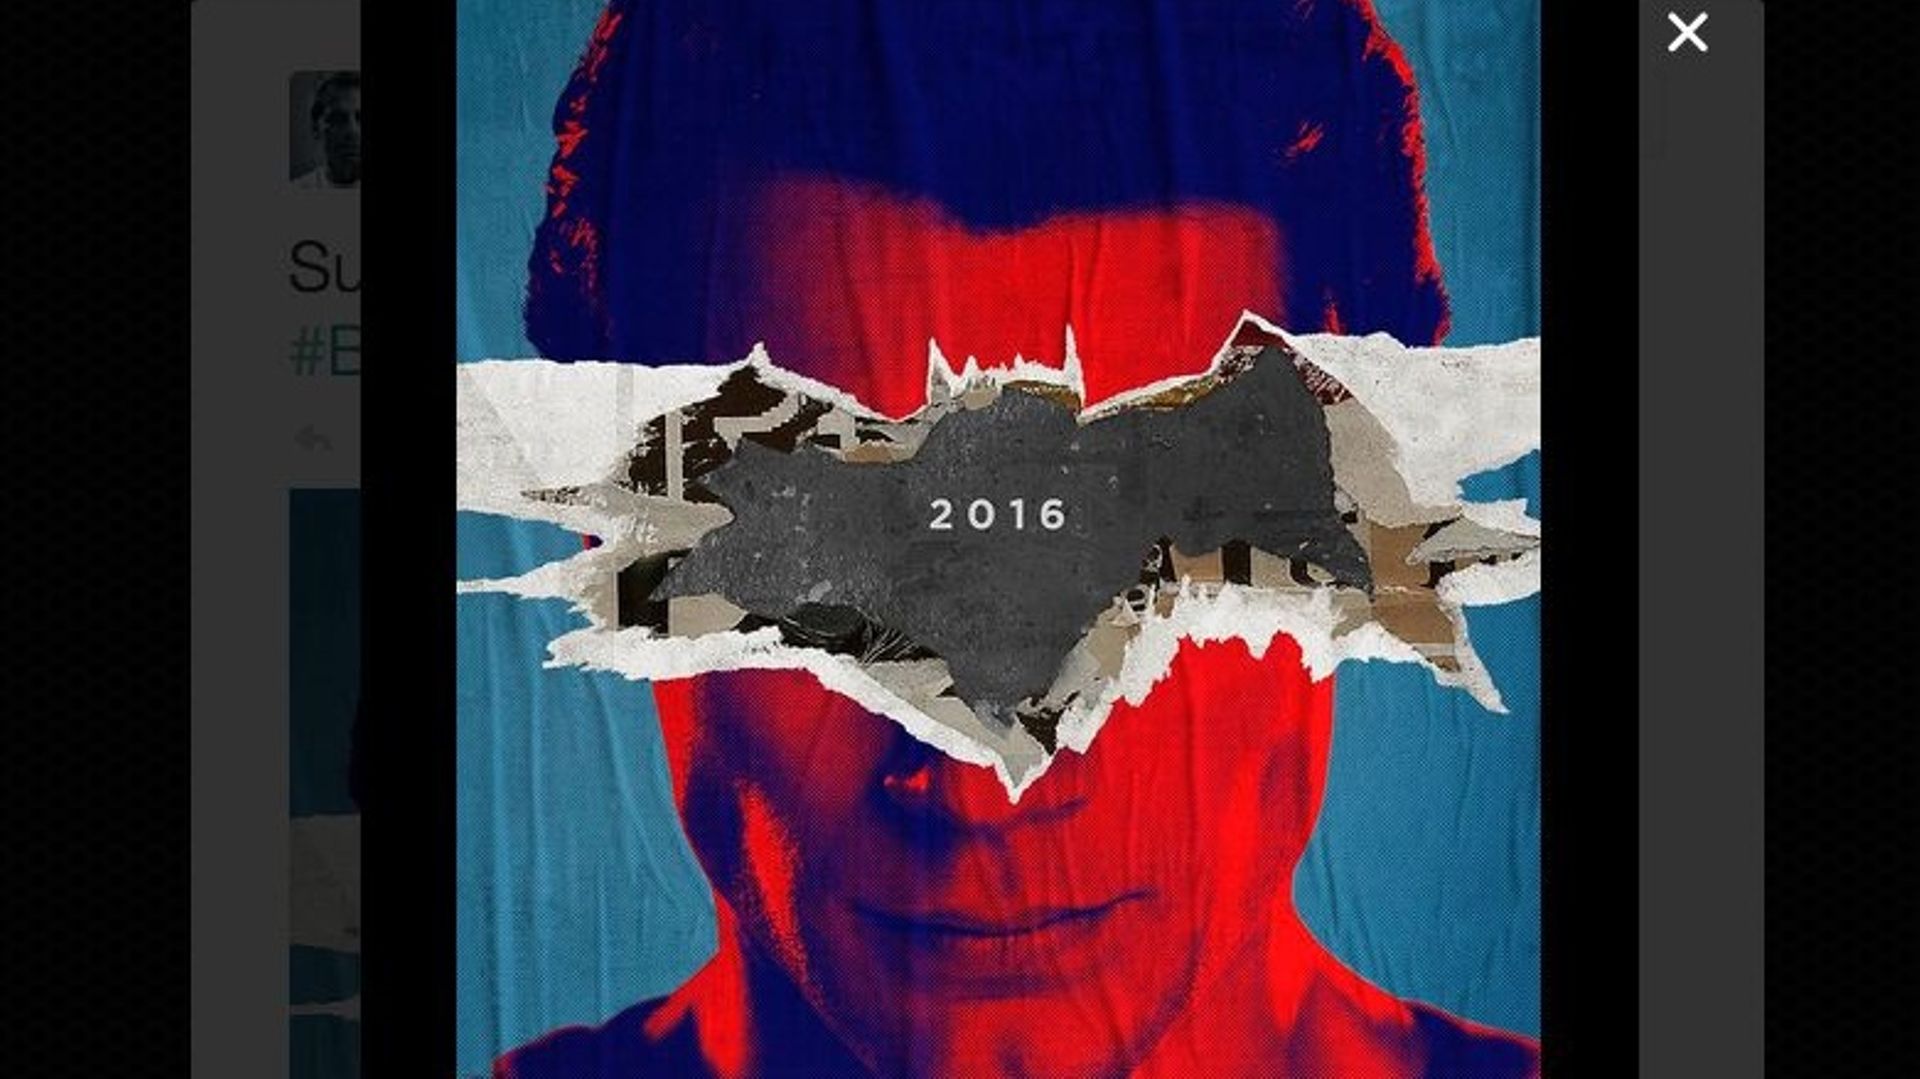 La sortie du film "Batman vs Superman" est prévue en 2016